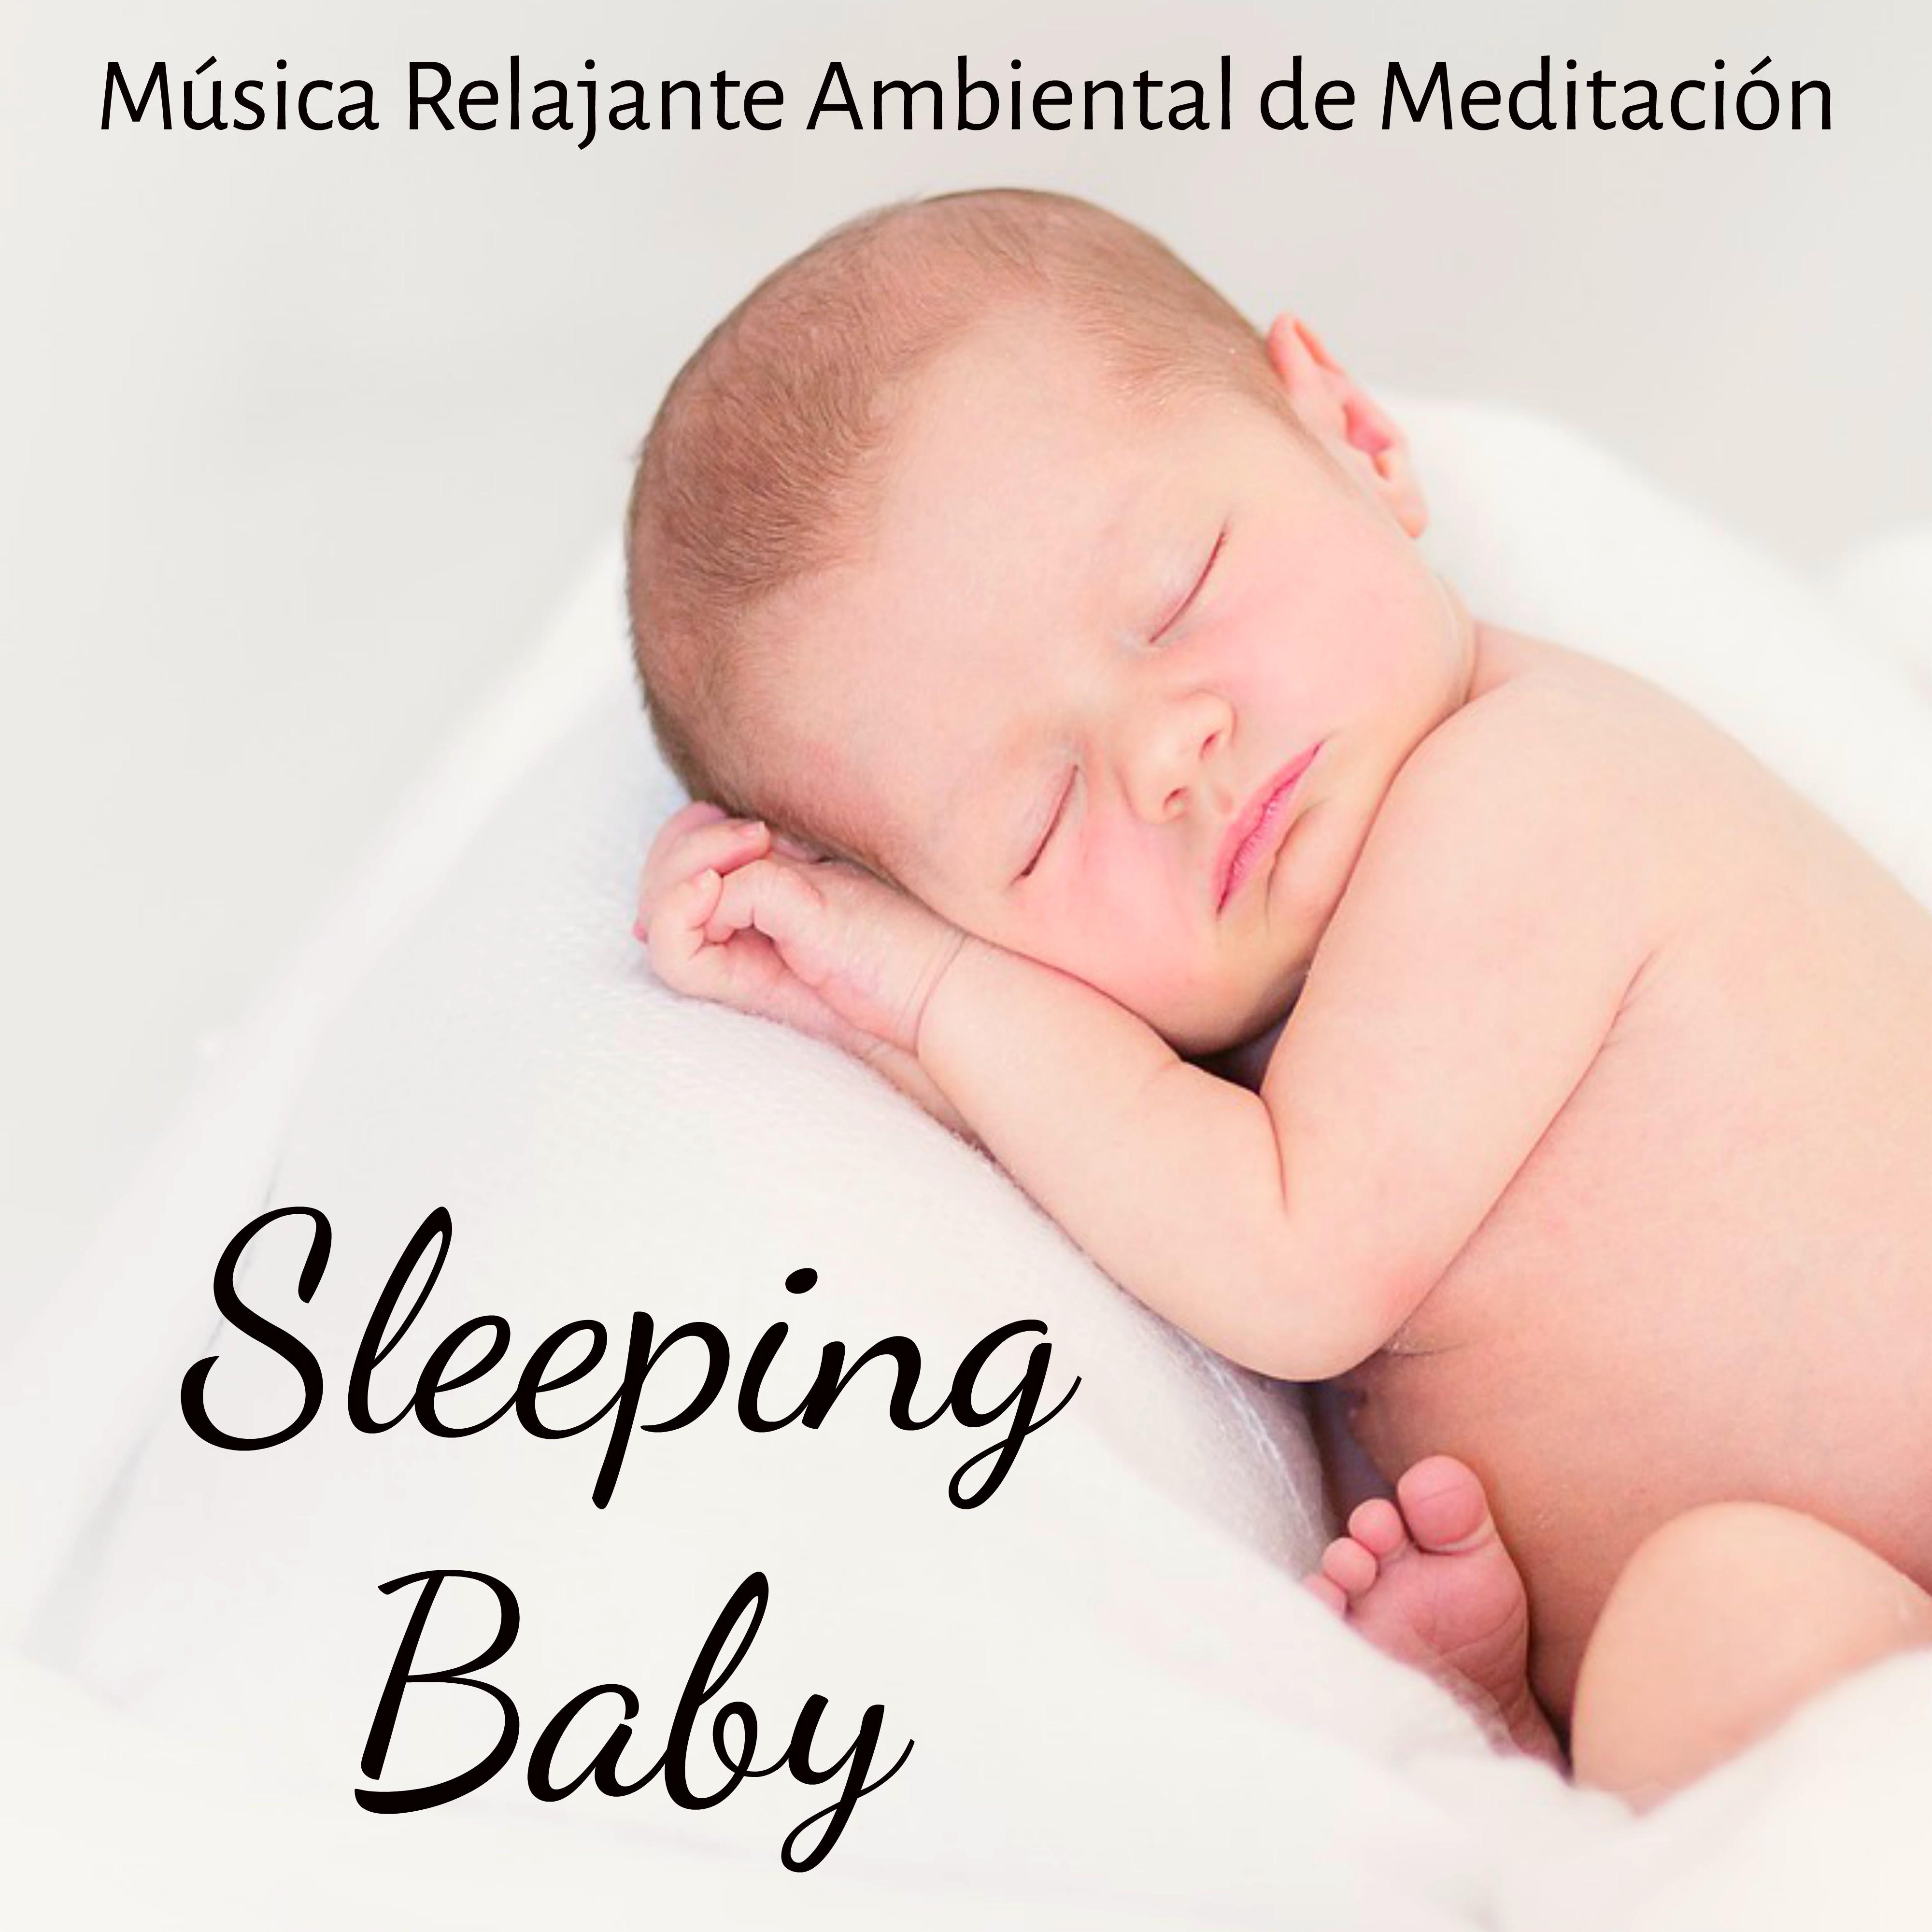 Sleeping Baby  Mu sica Relajante Ambiental de Meditacio n para Estudio Mejor Dormir Bien Chakra del Corazo n y Cancio n de Cuna para Ni os con Sonidos naturales Binaurales New Age